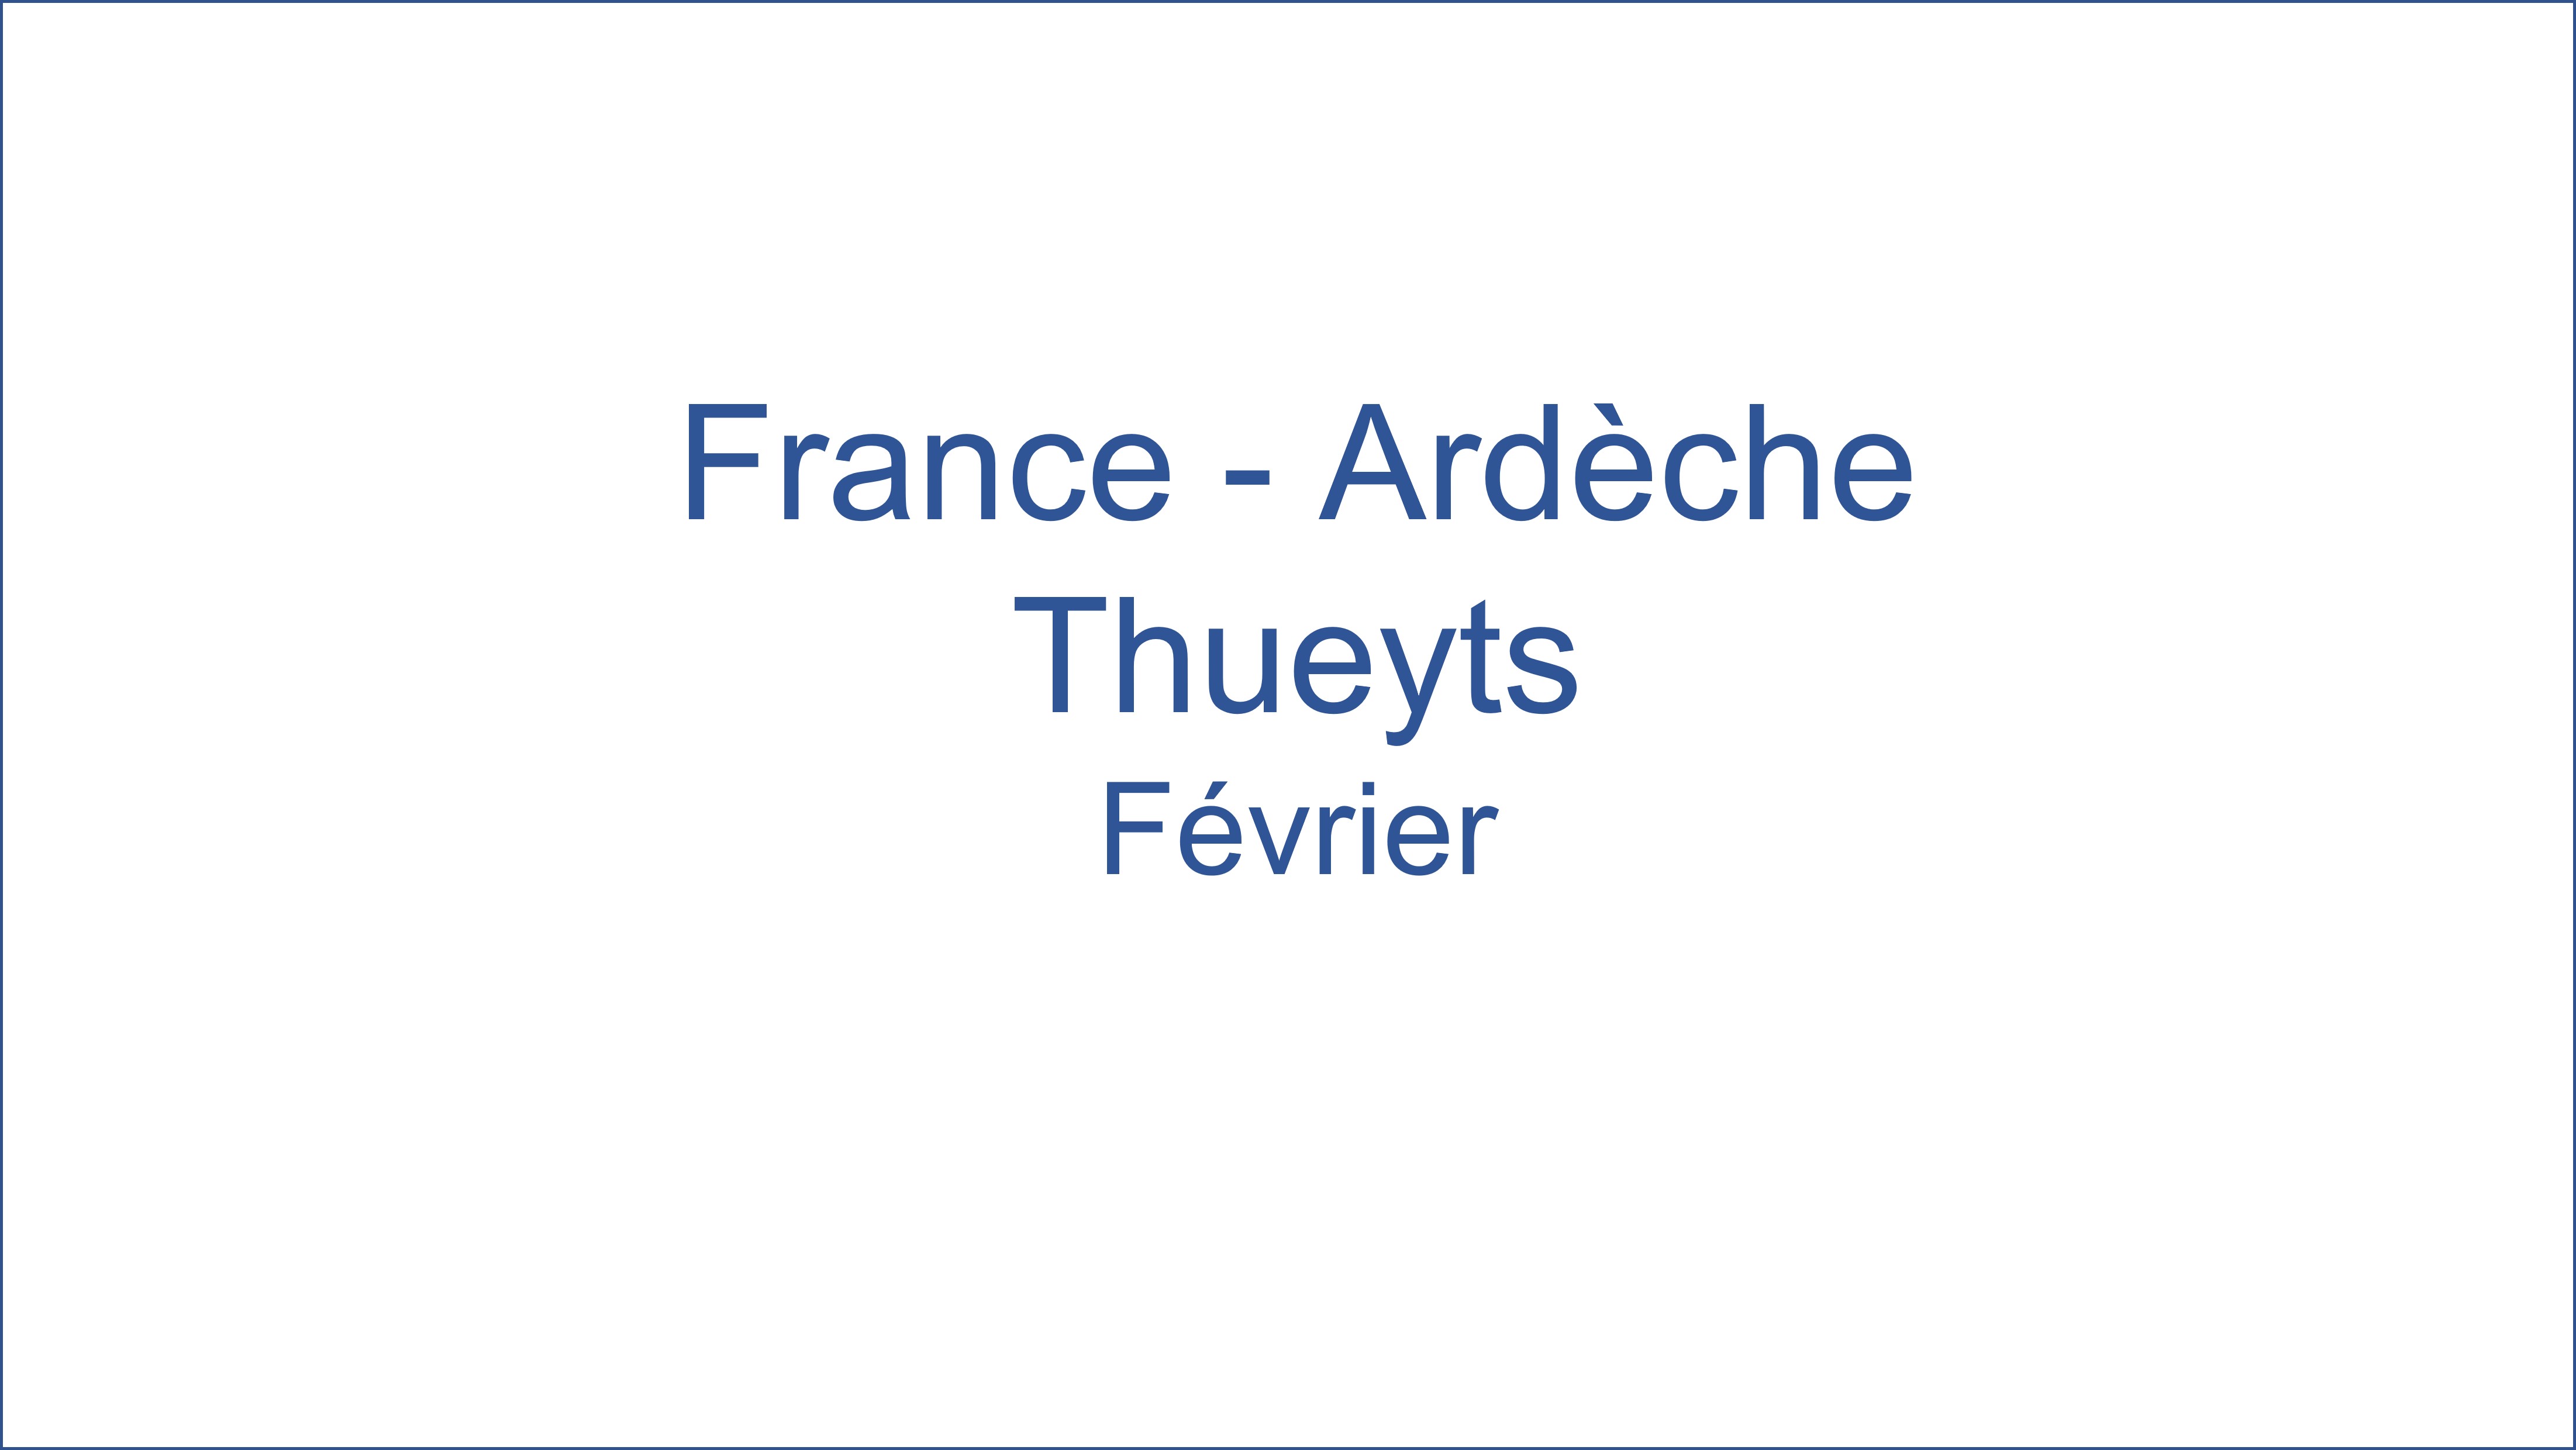 France � Ard�che Thueyts 02/2021